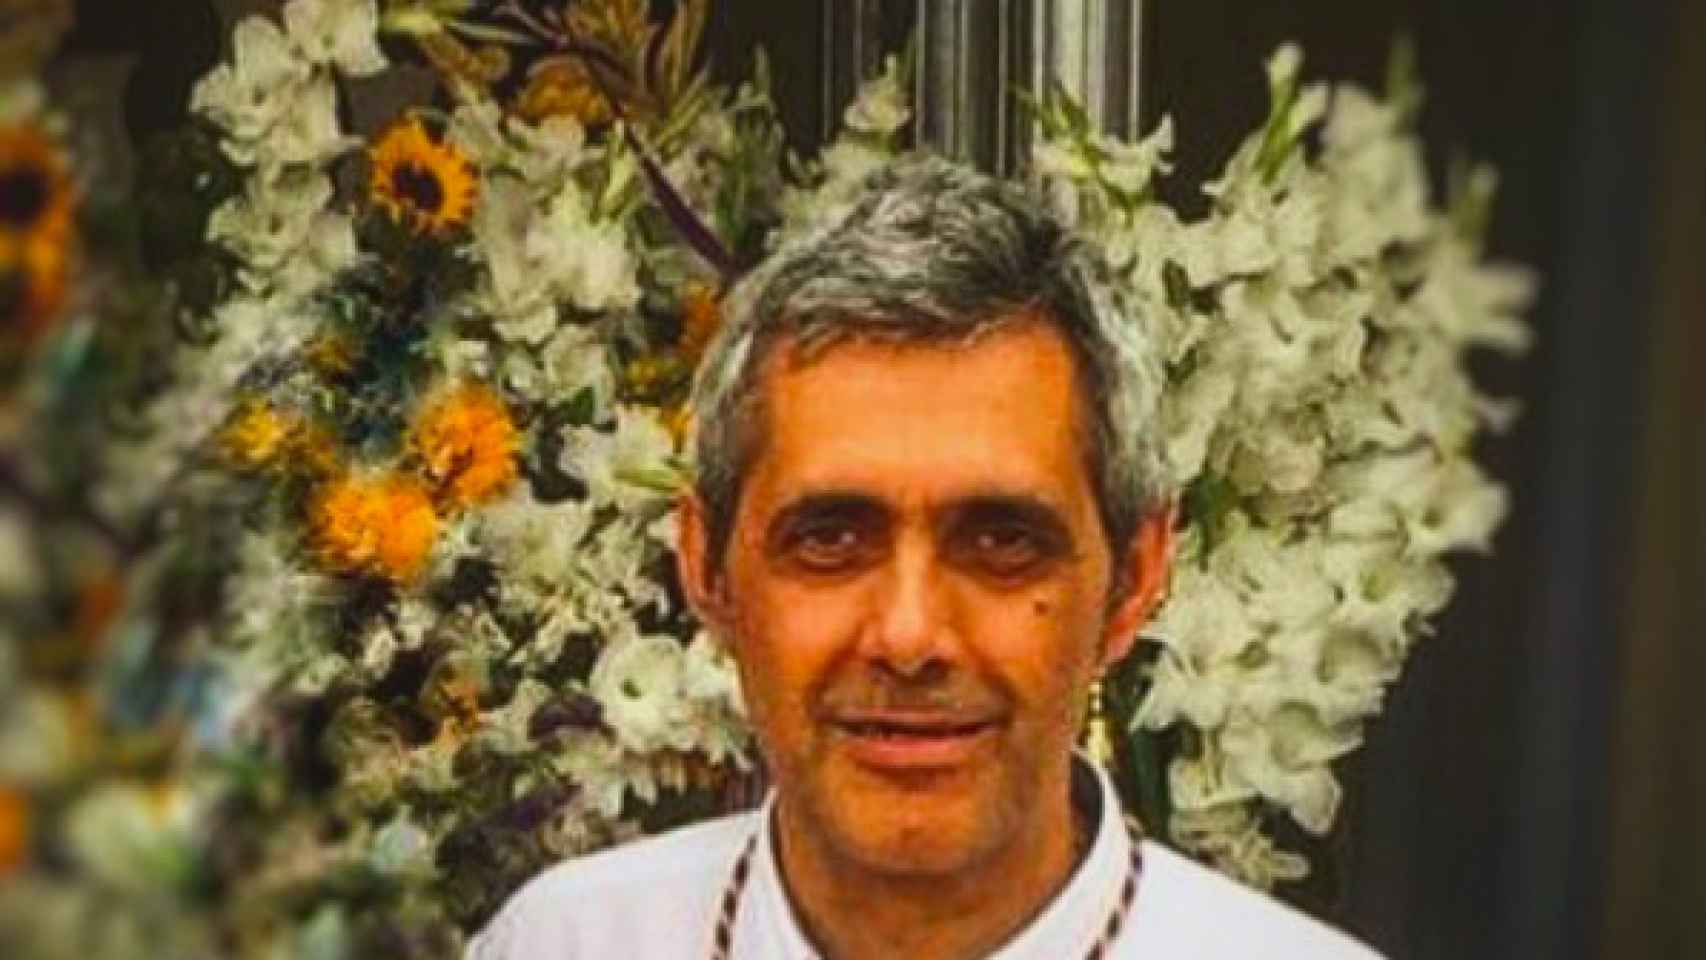 Fallece Joaquín Fernández, miembro destacado de entidades y colectivos de Santa Coloma